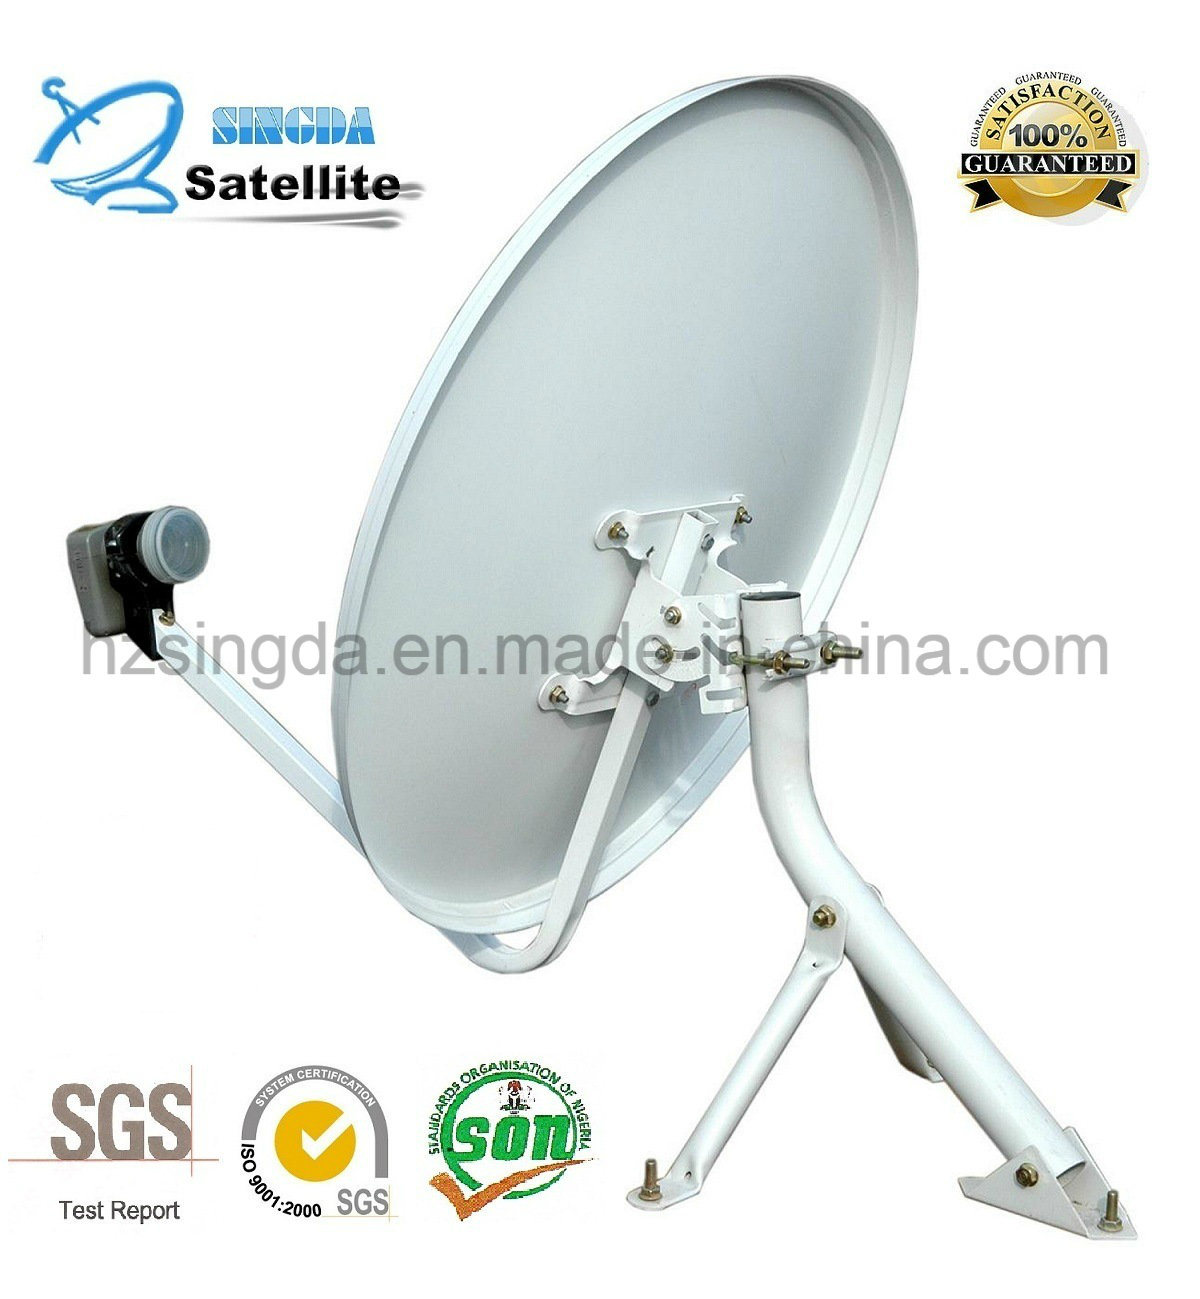 Ku Band satellite dish universal with SGS Certification